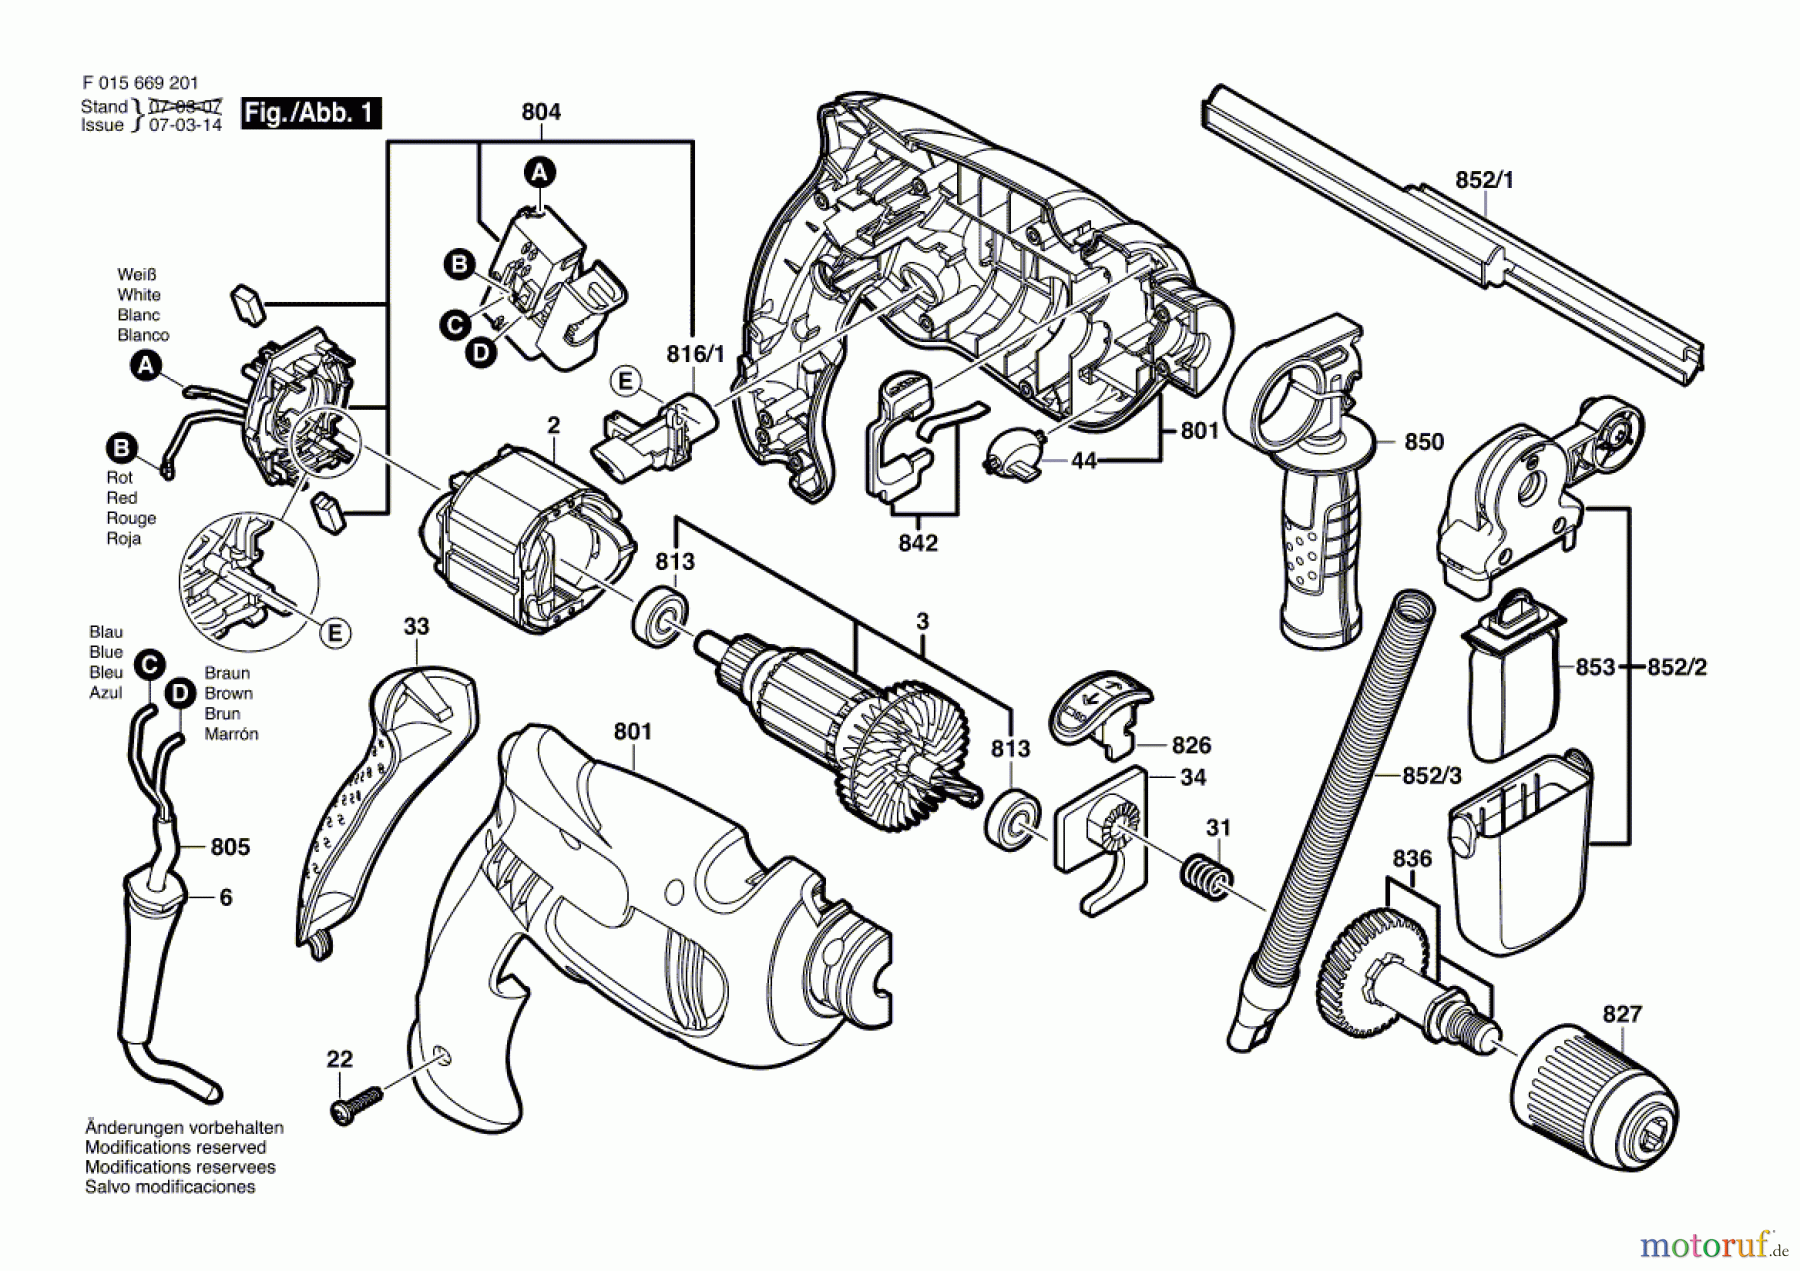  Bosch Werkzeug Schlagbohrmaschine 6692 Seite 1